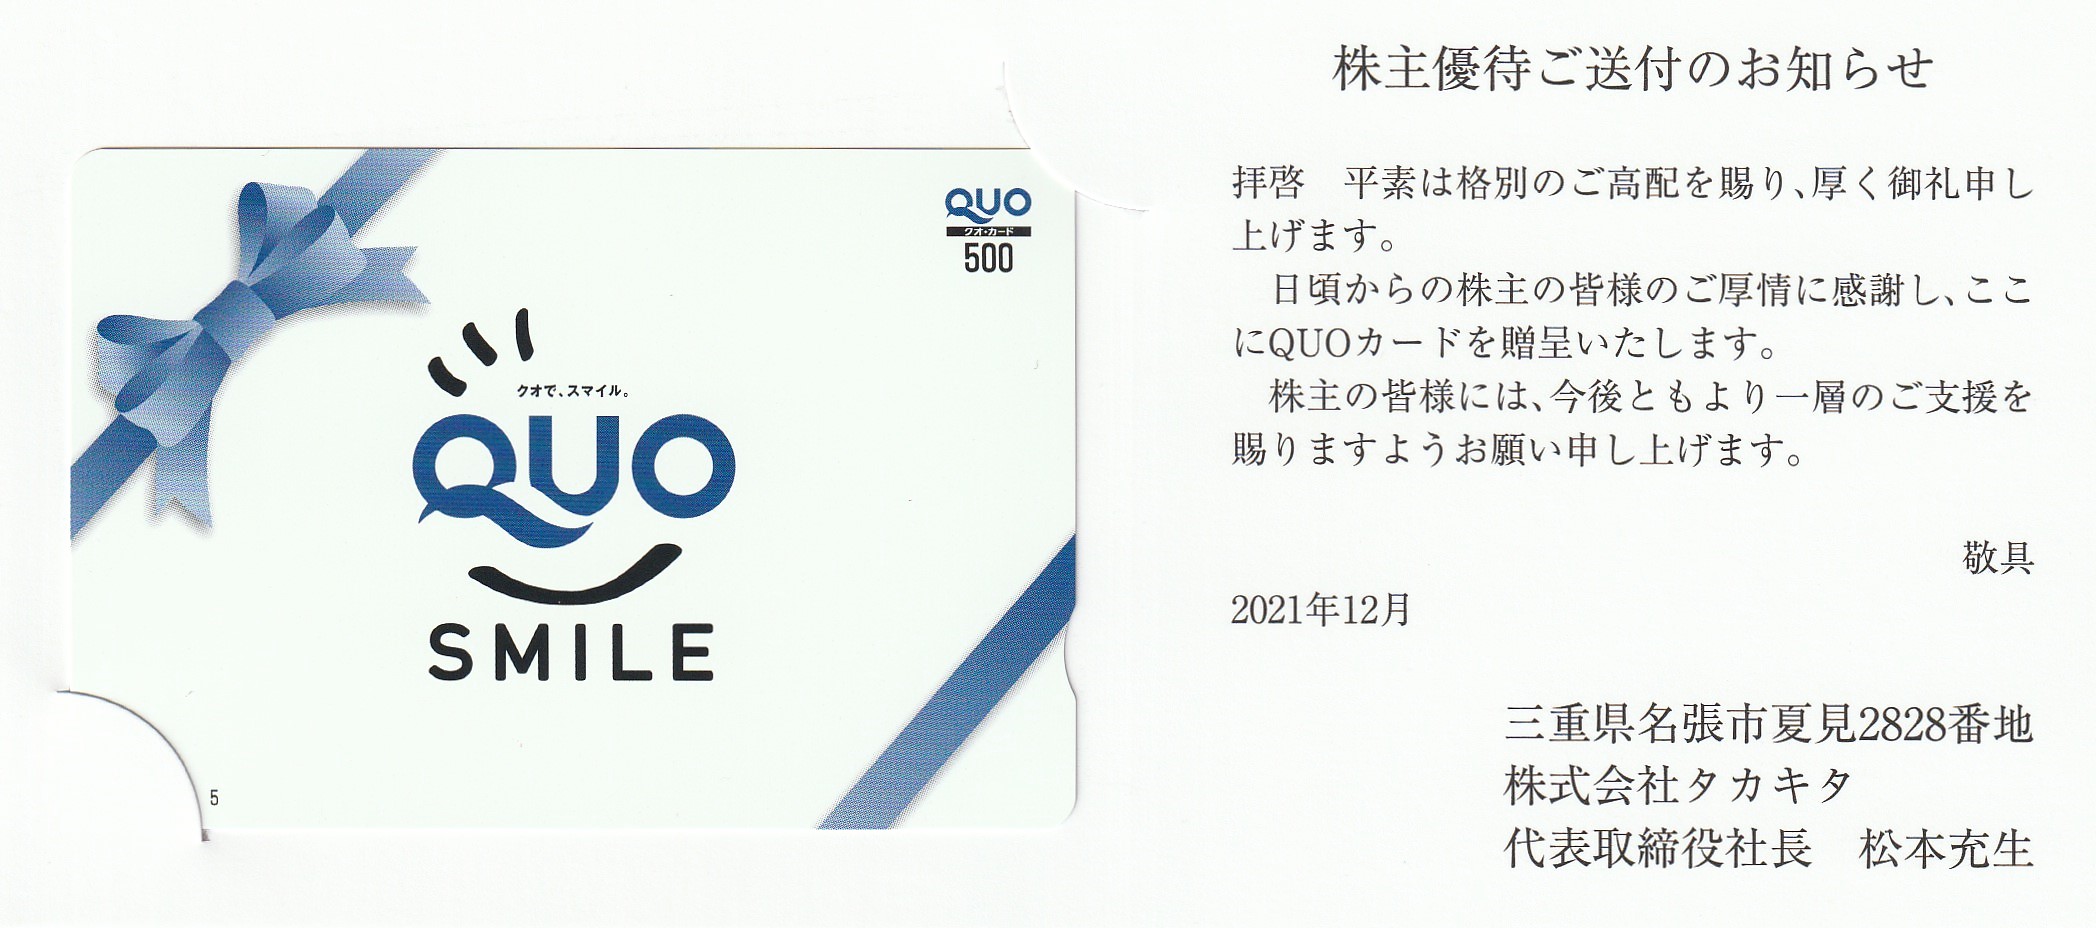 【9月優待】株式会社タカキタからQUOカードが届きました